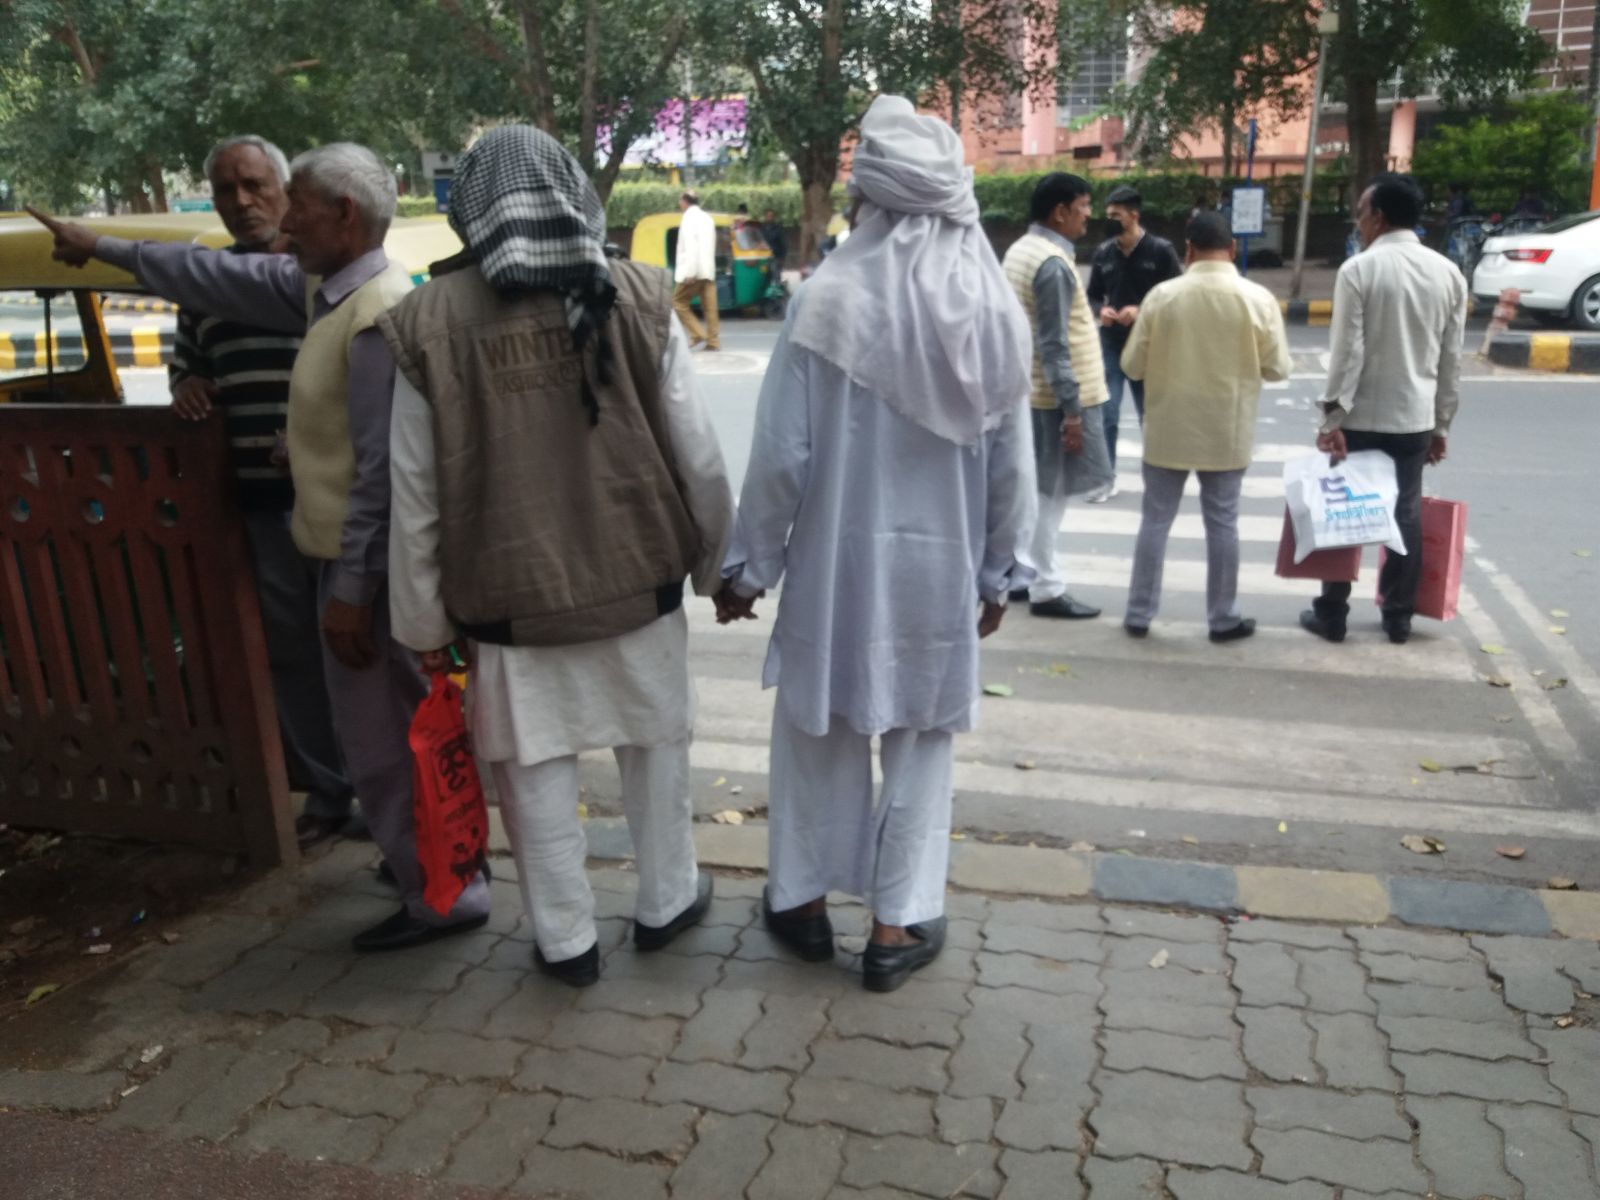 Öreg barátok Delhi belvárosában. Indiában a testi érintkezésnek más szabályai vannak, mint idehaza, főleg a férfiak között. Az erősebbik nem tagjai között teljesen bevett az olyan testi közelség, ami heteroszexuálisok között még Dél-Európában is túlzásként hatna. Nagyon sok kart karba öltve, egymásba csimpaszkodva, sőt, egymást kézen fogva sétáló férfi párt láttam, hinduk, muszlimok és szikhek egyaránt voltak közöttük. Nem hiszem, hogy mindennek köze lenne a homoszexualitáshoz, baráti megnyilvánulásokról van szó. Hasonló gesztusoknak szemtanúja voltam Törökországban és Iránban is. Ez utóbbiban egy ismerősöm néha a combomra tette a kezét miközben magyarázott, ami kicsit zavart, de semmiféle erotikus tartalma nem volt, a barátai is hasonlóképpen viselkedtek egymással.
